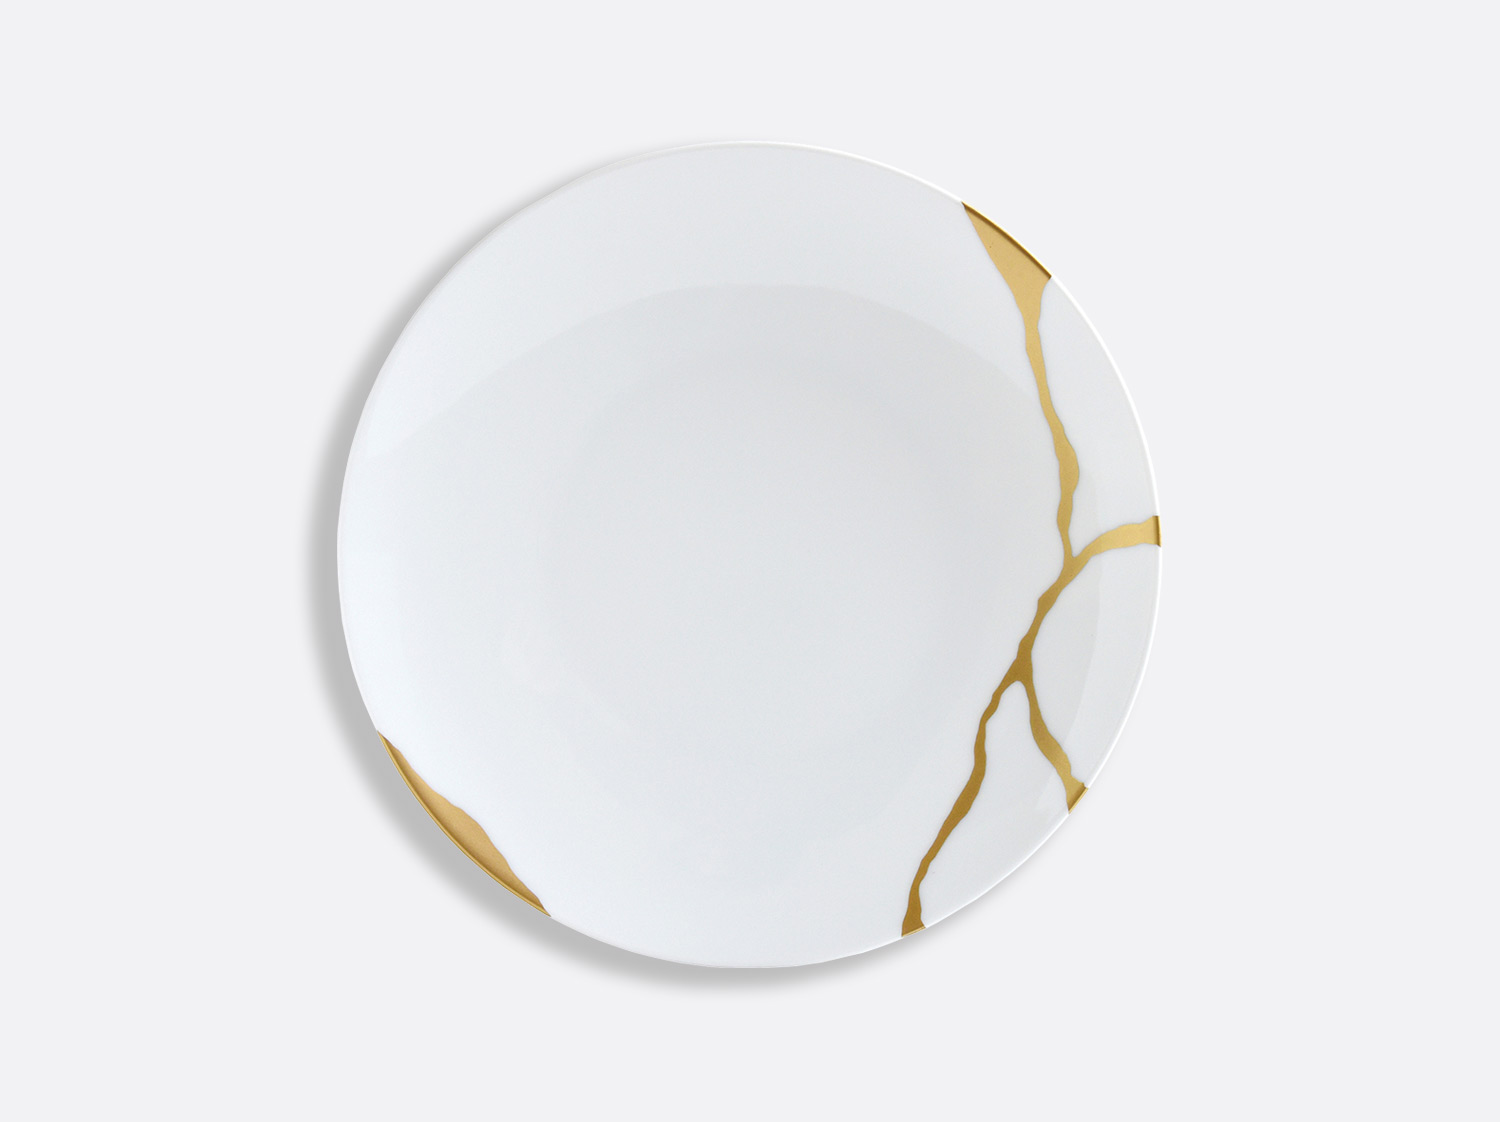 China Coupe salad plate 21 cm of the collection Kintsugi | Bernardaud